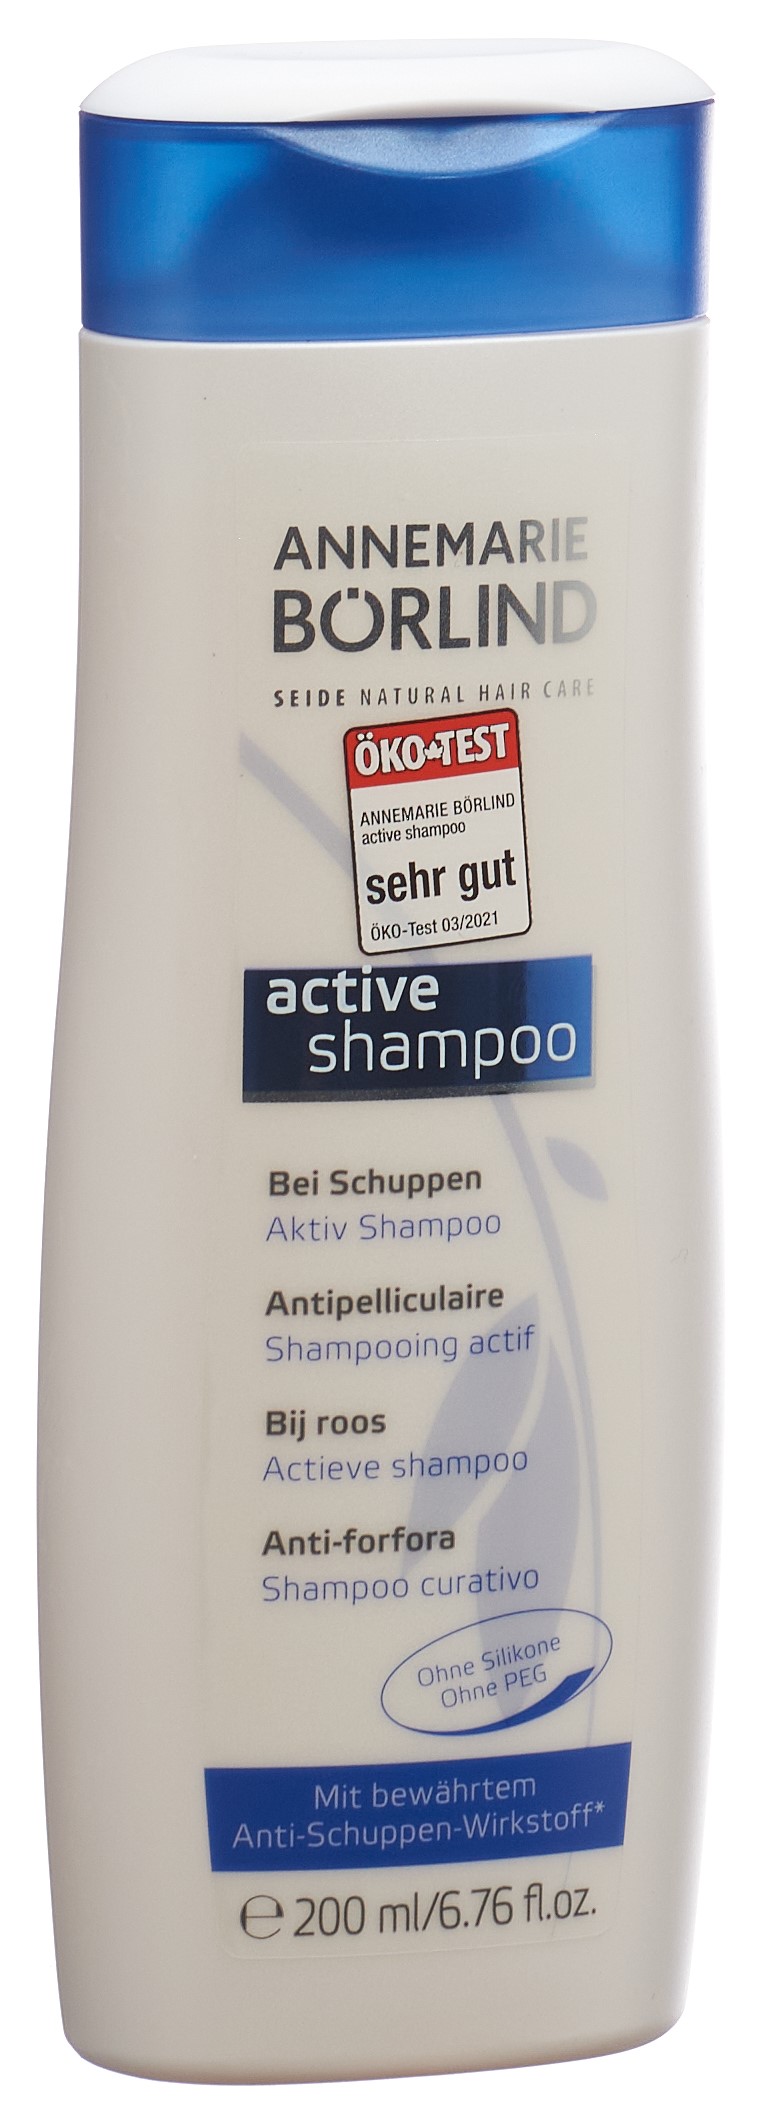 BÖRLIND HAIR CARE Aktiv Shampoo 200 ml